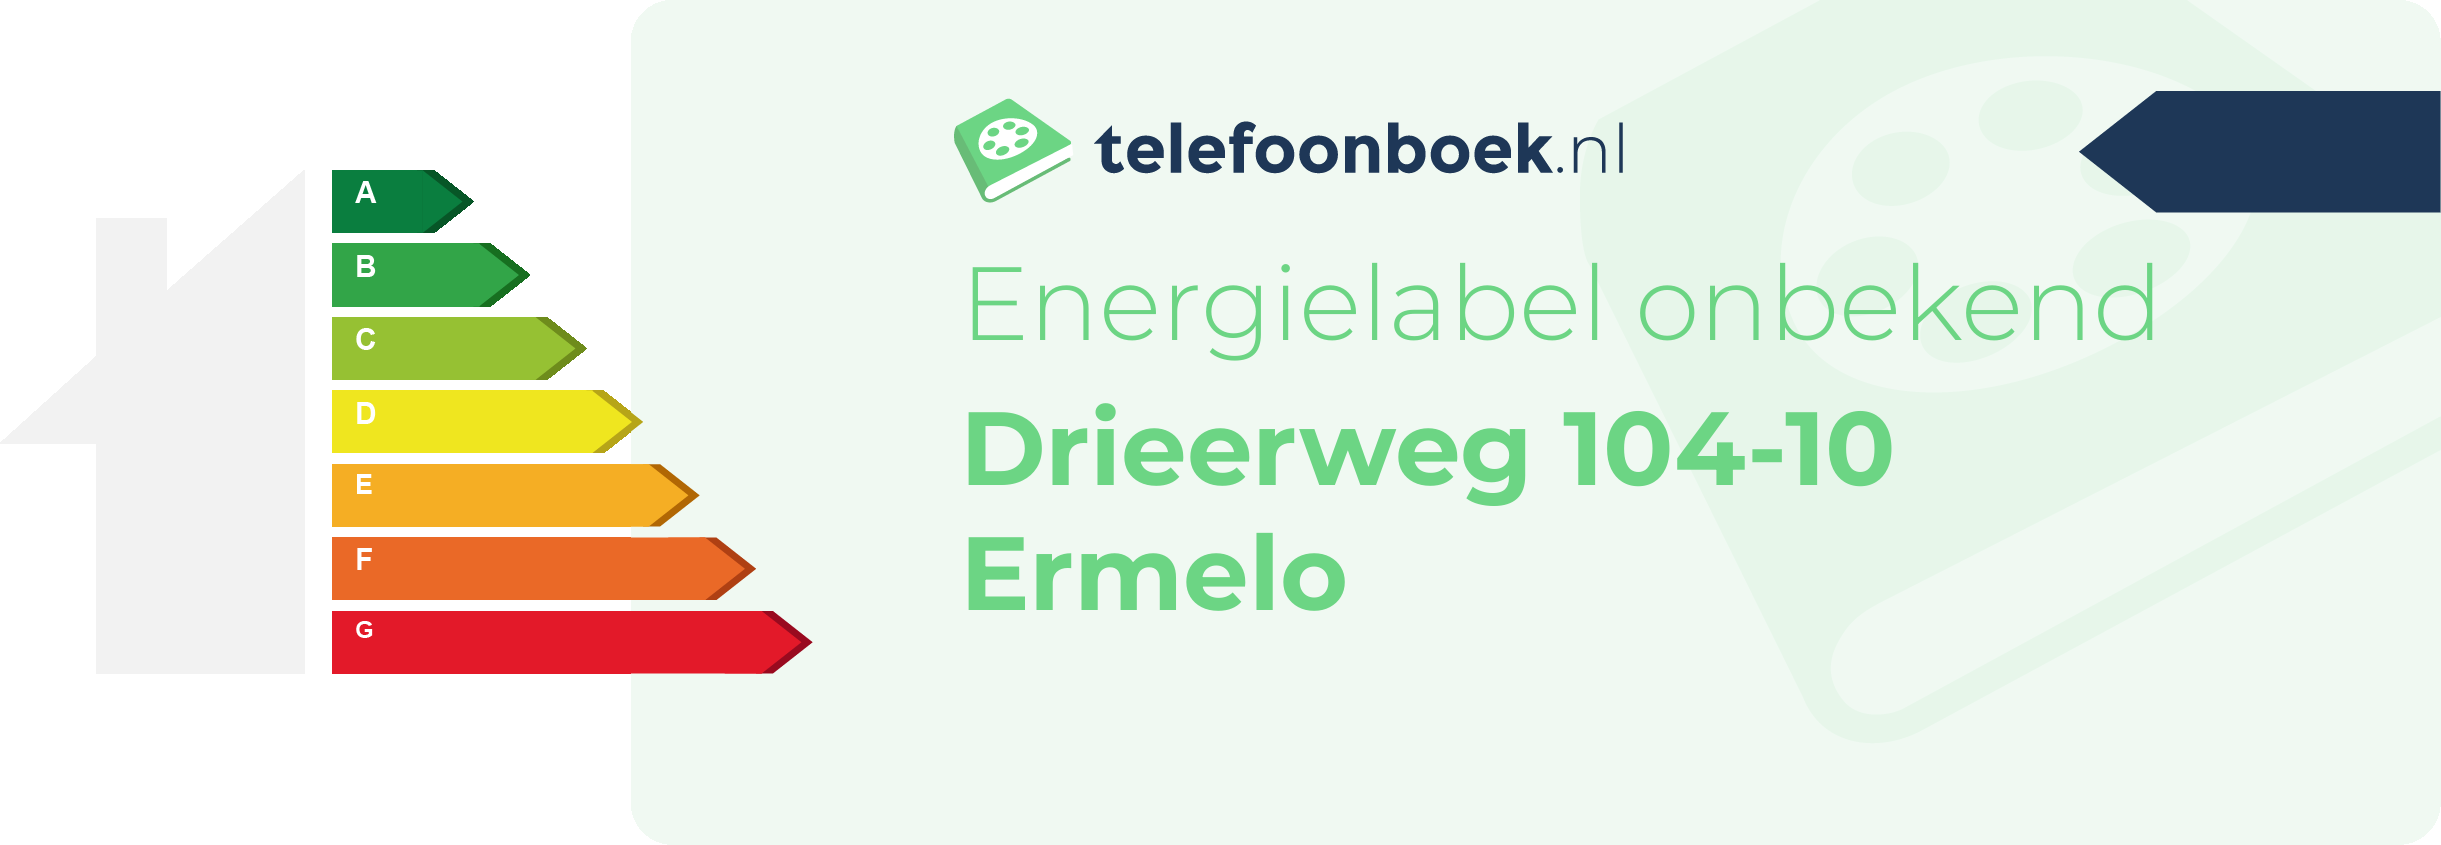 Energielabel Drieerweg 104-10 Ermelo